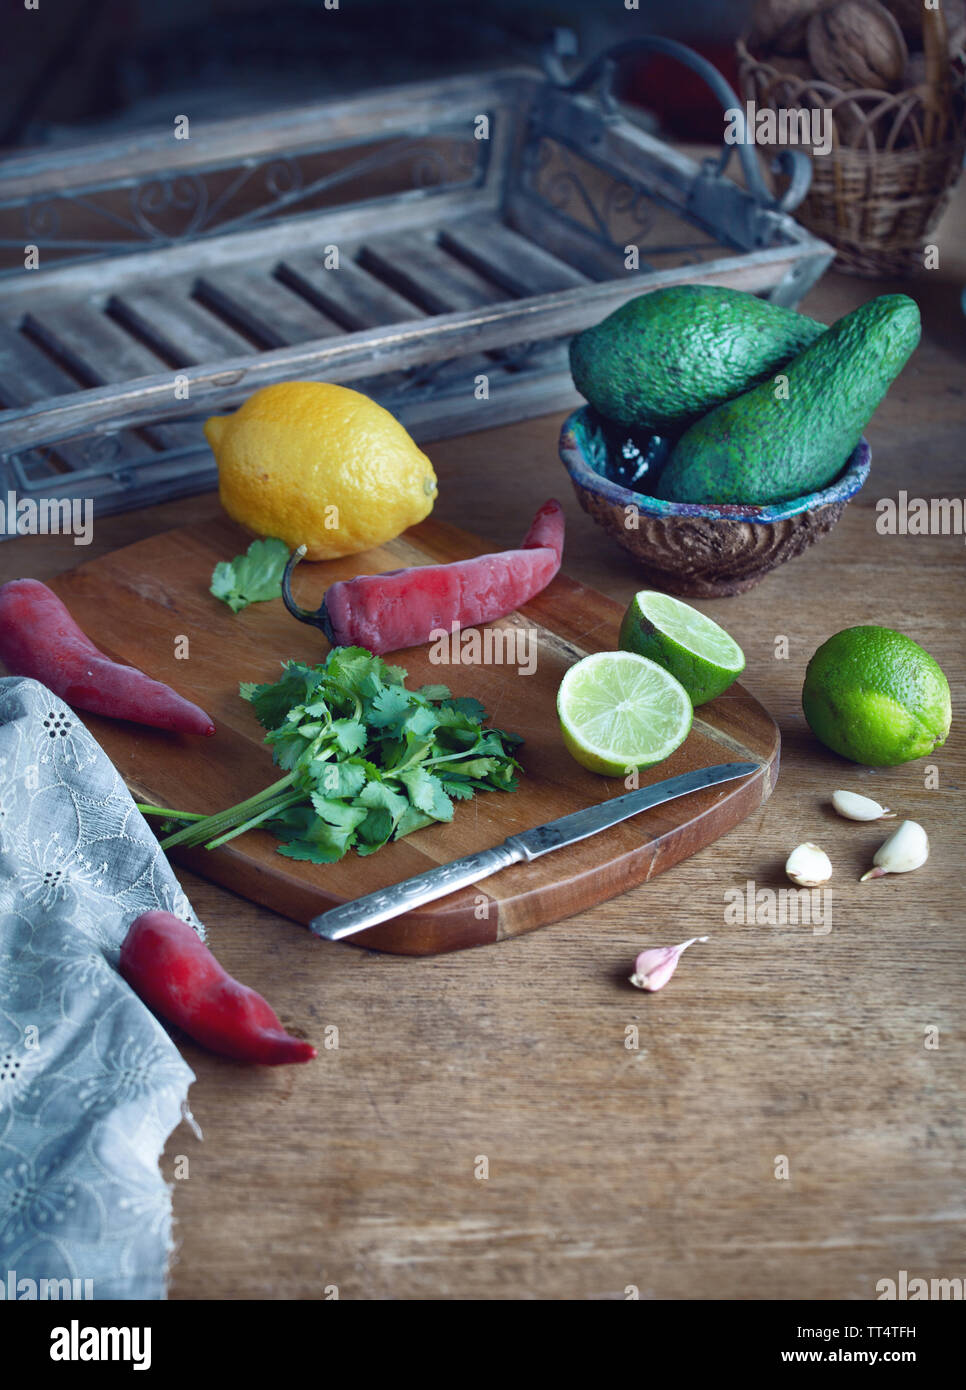 Kochen mexikanische Guacamole - Avocado, Limette, Zitrone, Pfeffer, Knoblauch und Koriander auf einer hölzernen Tisch. essen Hintergrund mit Kopie Raum Stockfoto